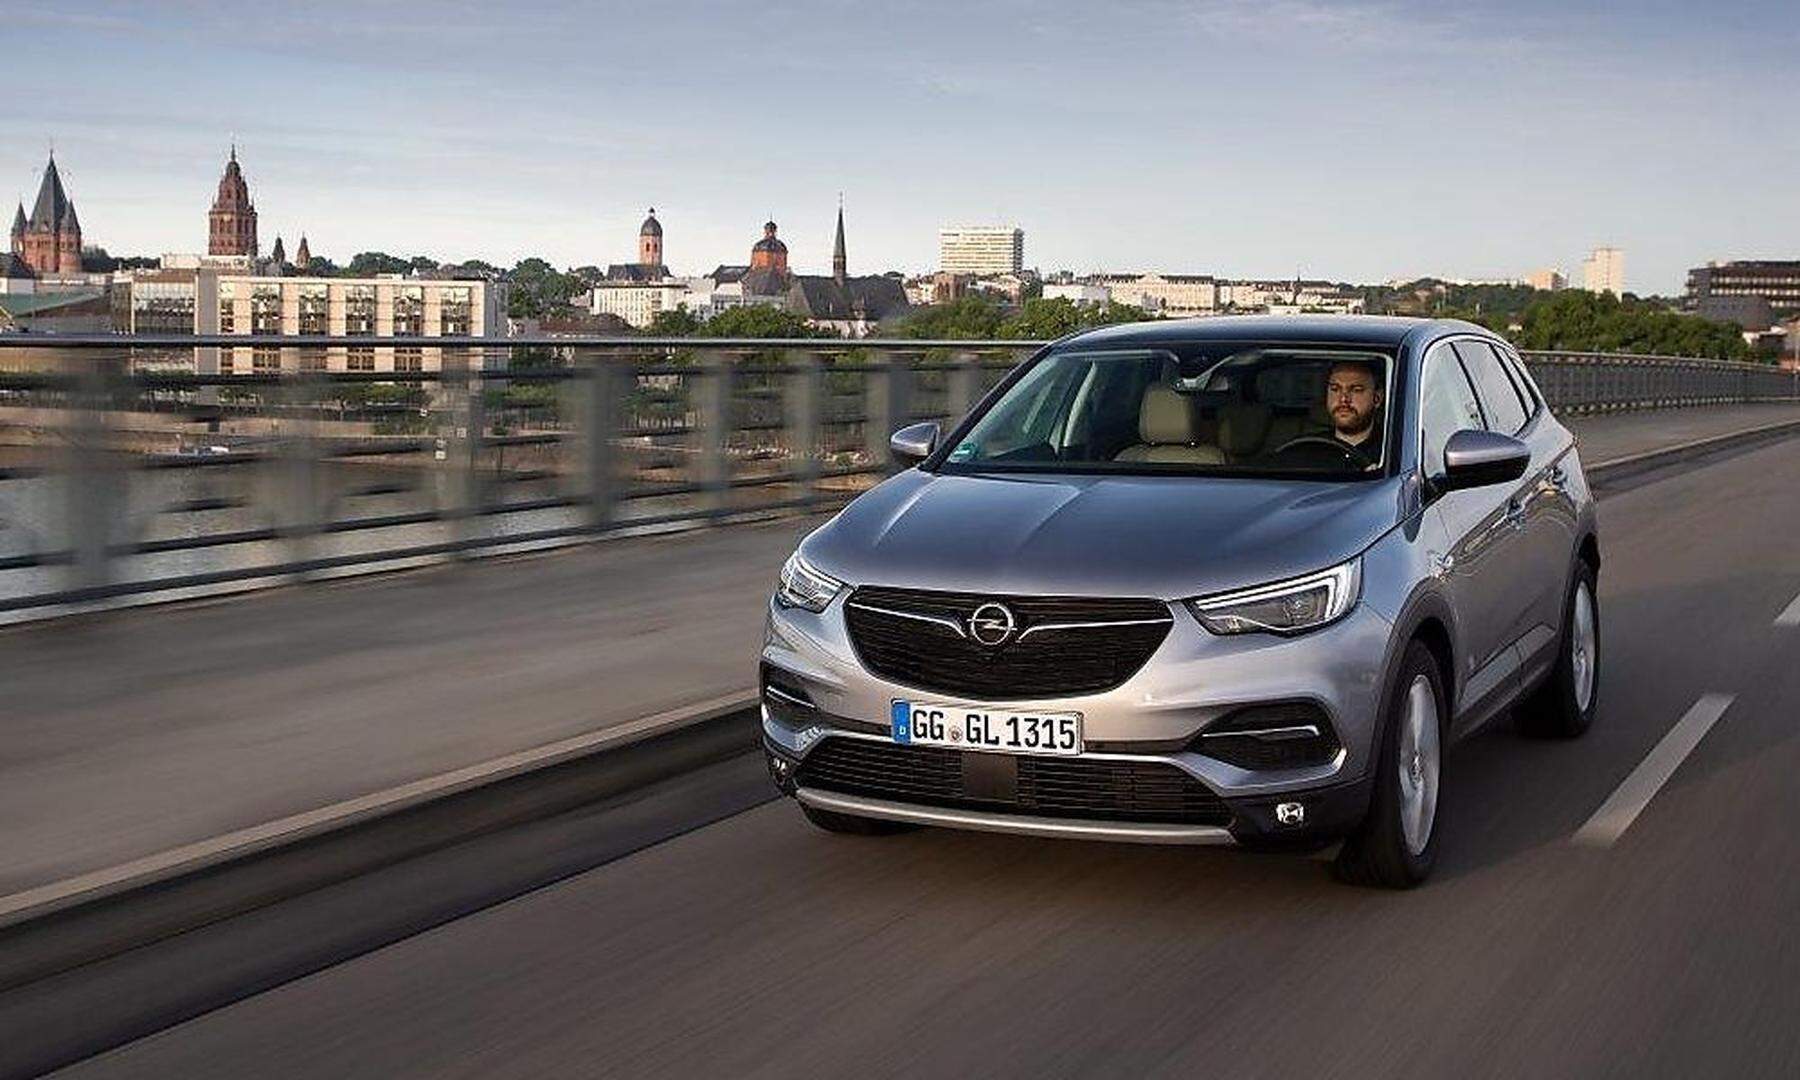 Das neue SUV: Der athletisch-abenteuerlustige Opel Grandland X (FOTO)